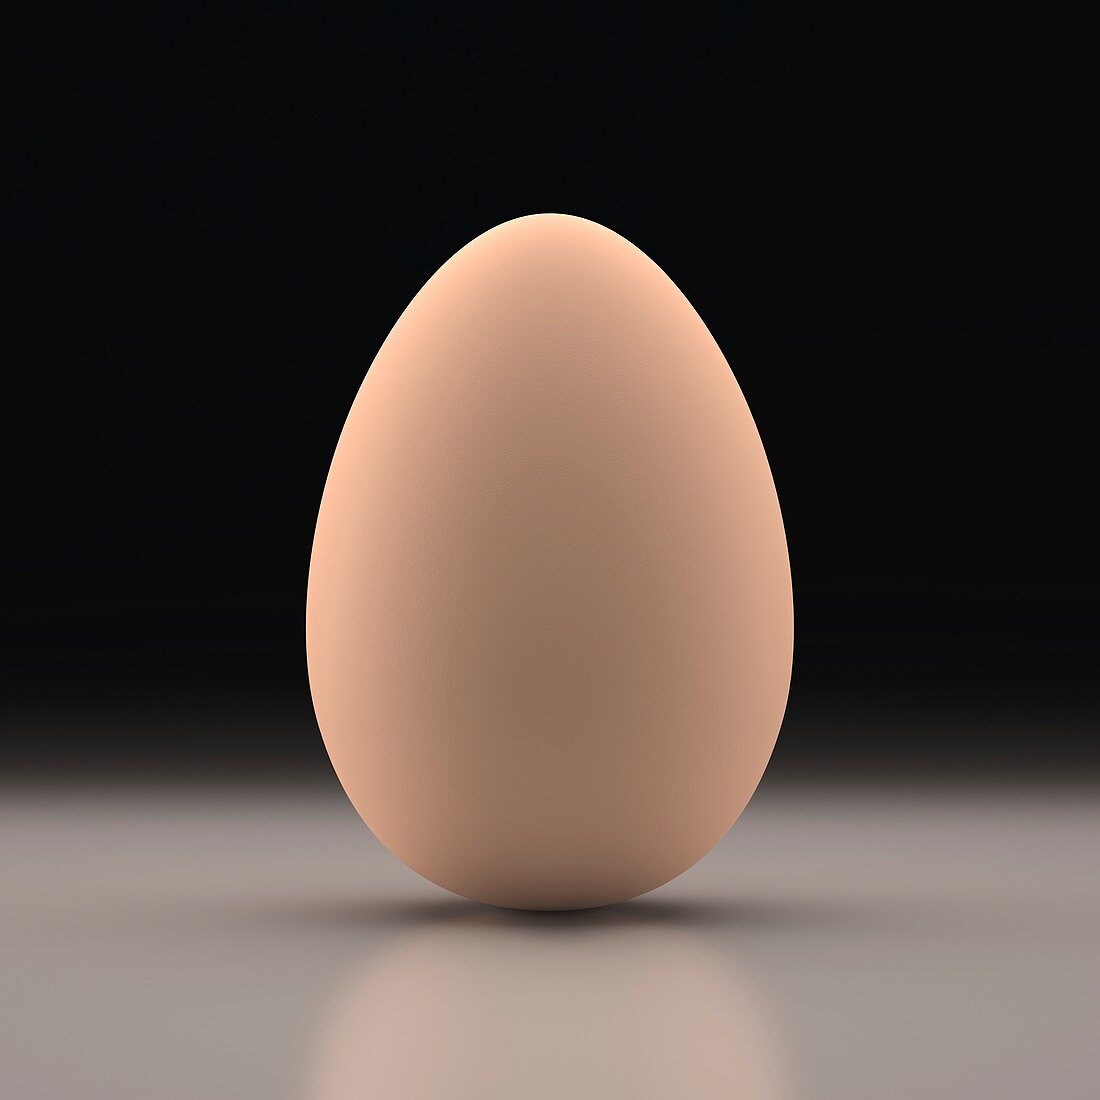 Egg,illustration